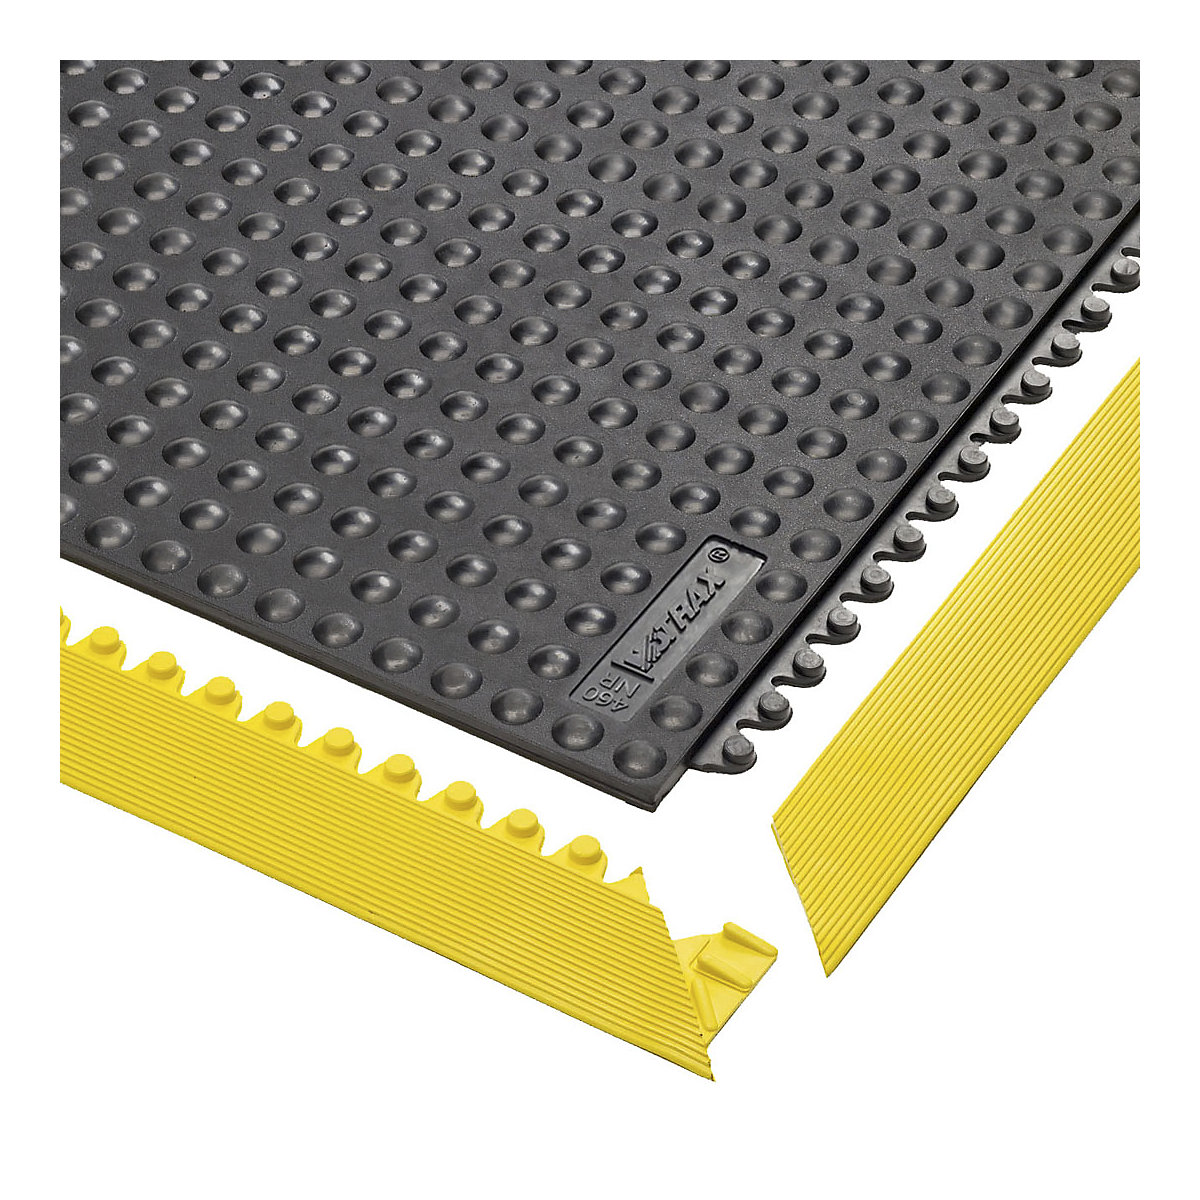 Plug-in tile system, Skywalker studded natural rubber – NOTRAX